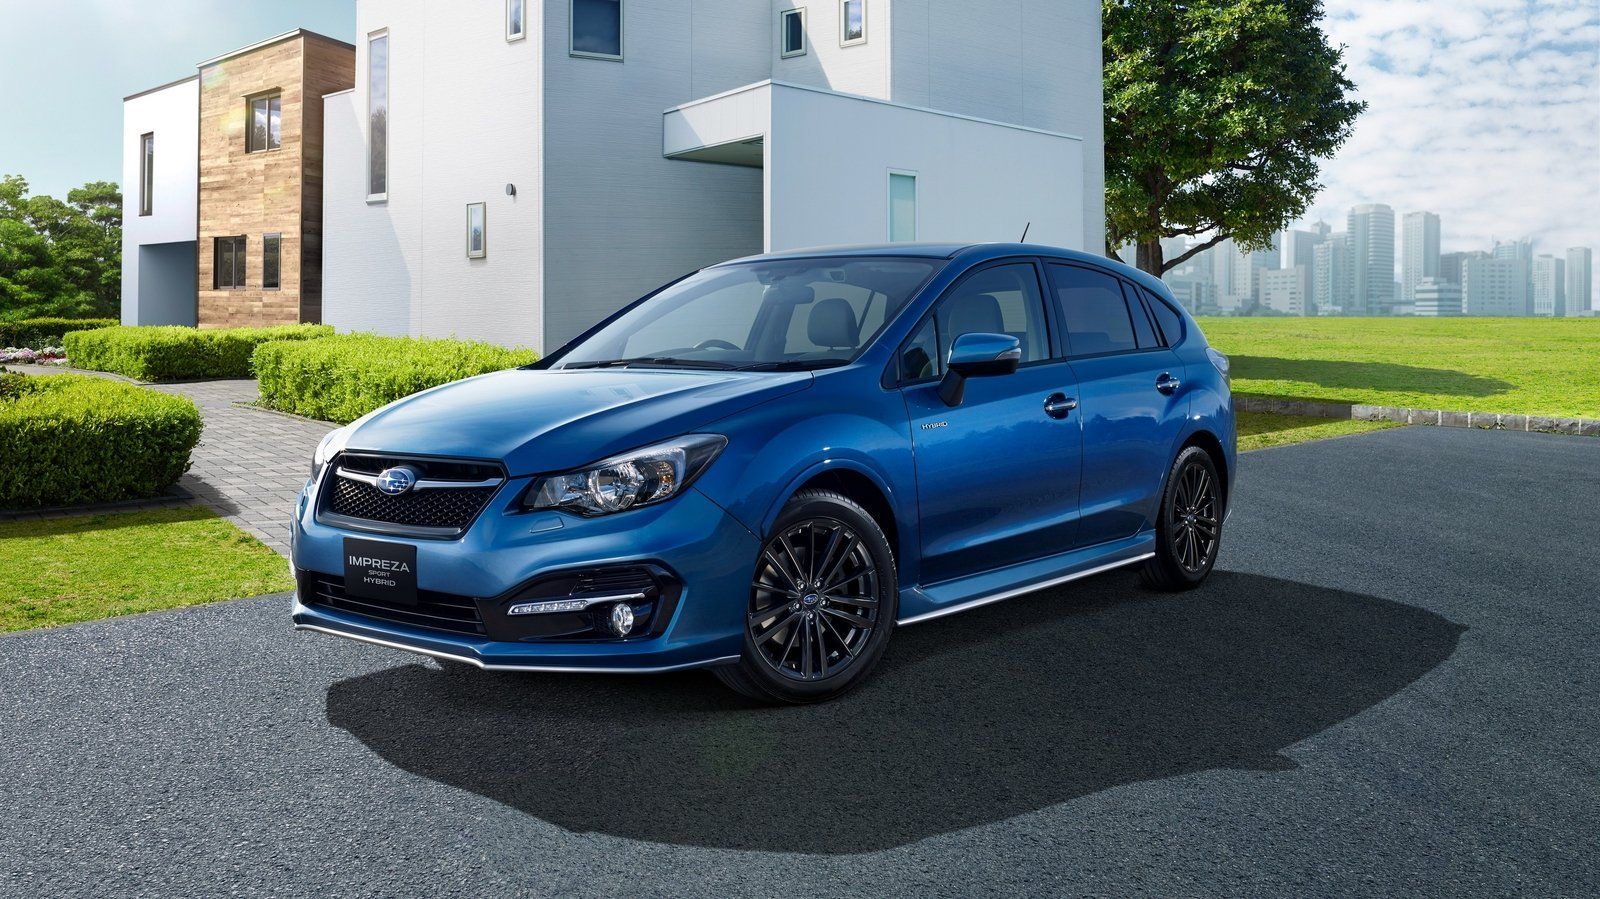 2018 Subaru Impreza 4door Sport 060 Times, Top Speed